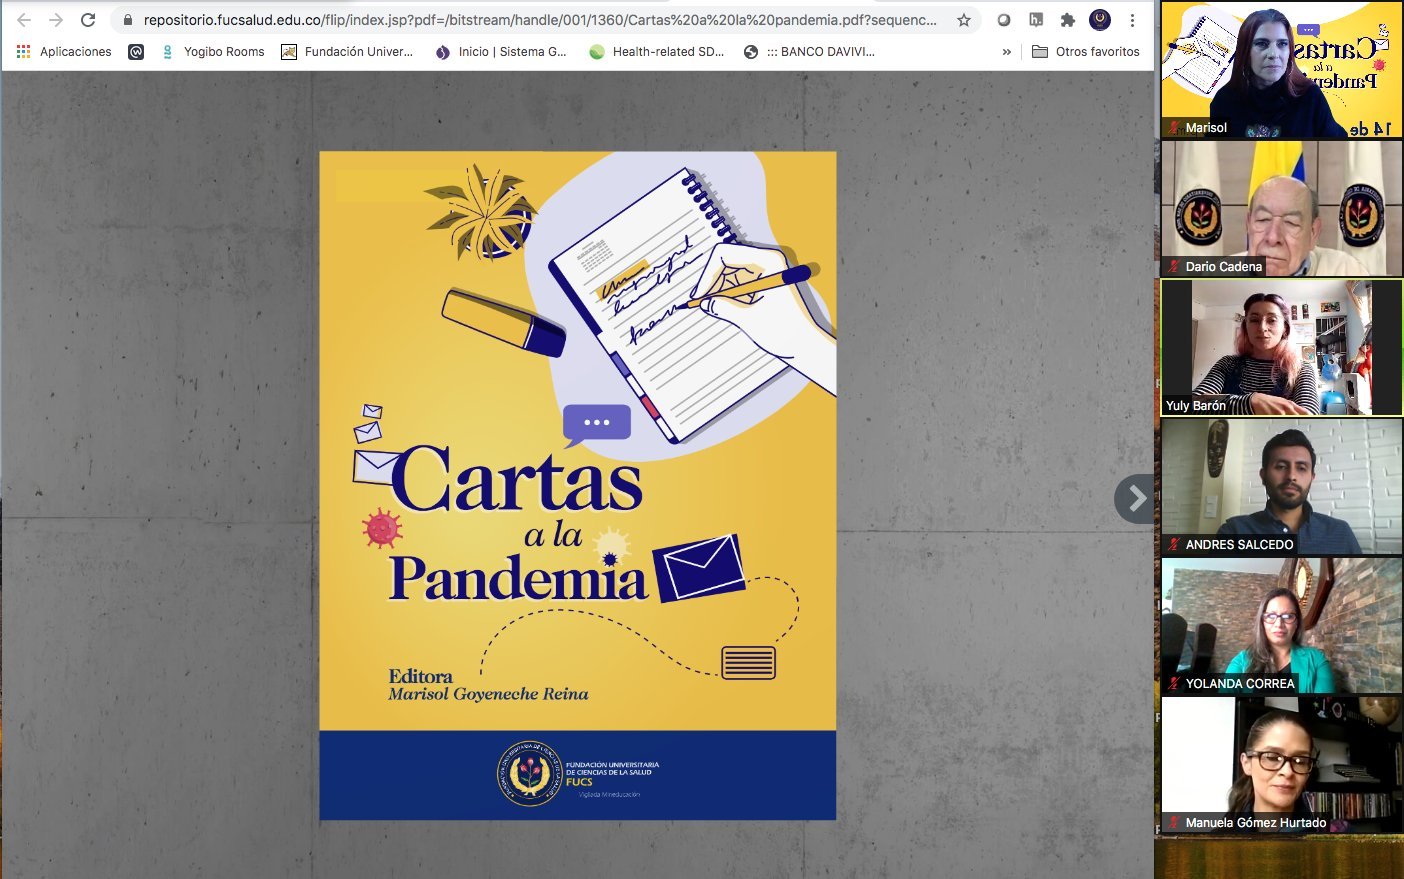 Lanzamiento virtual del libro 'Cartas a la Pandemia'